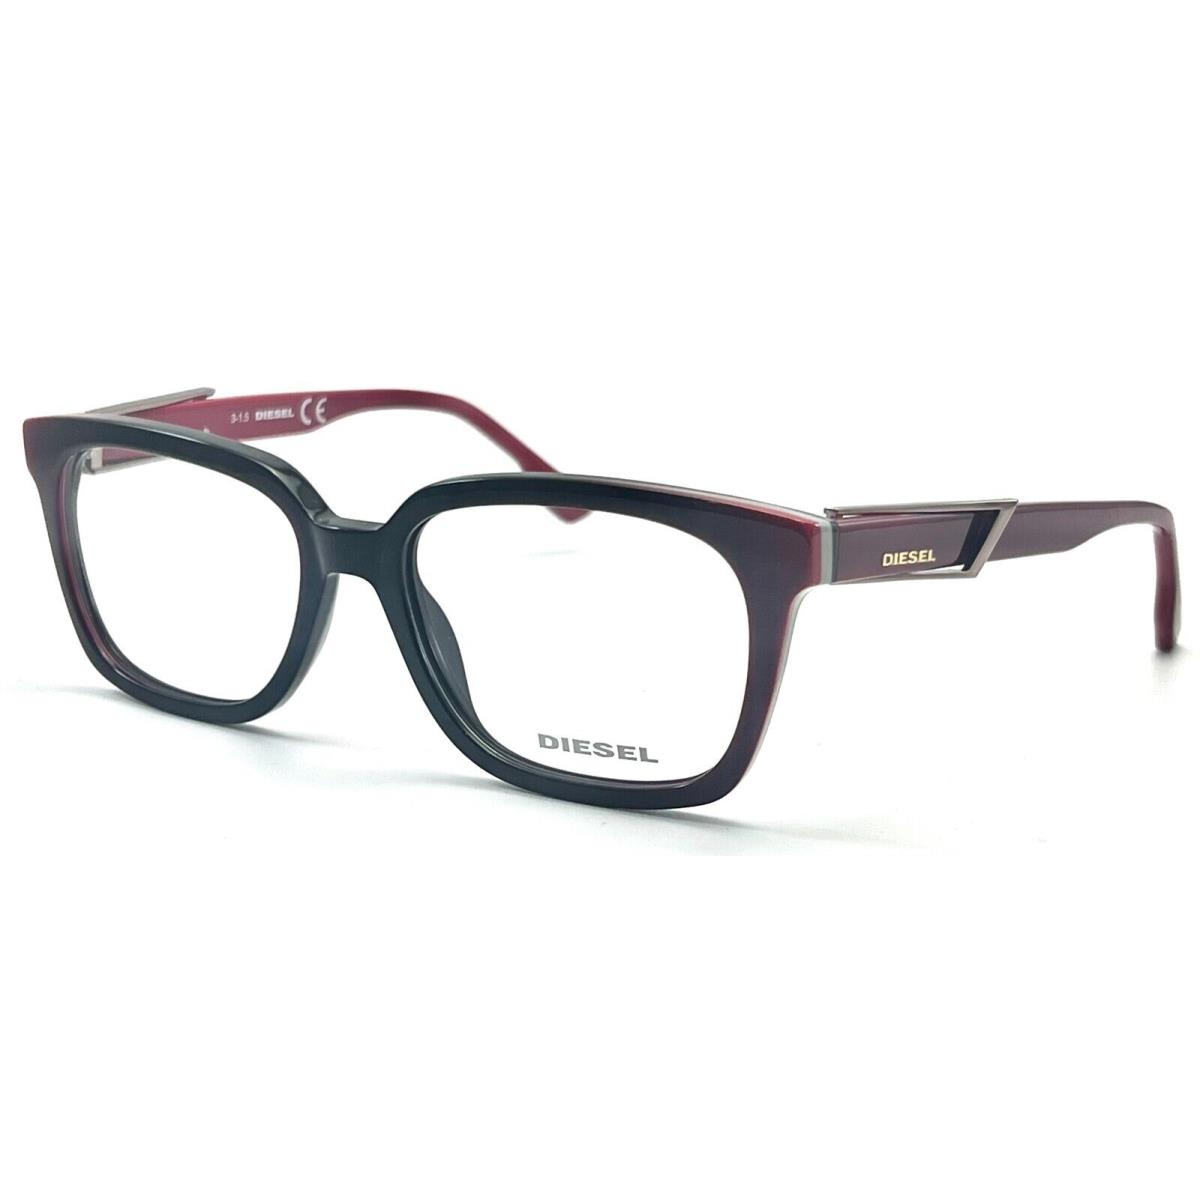 Diesel DL5111 077 Fuchsia Eyeglasses 54-17 145